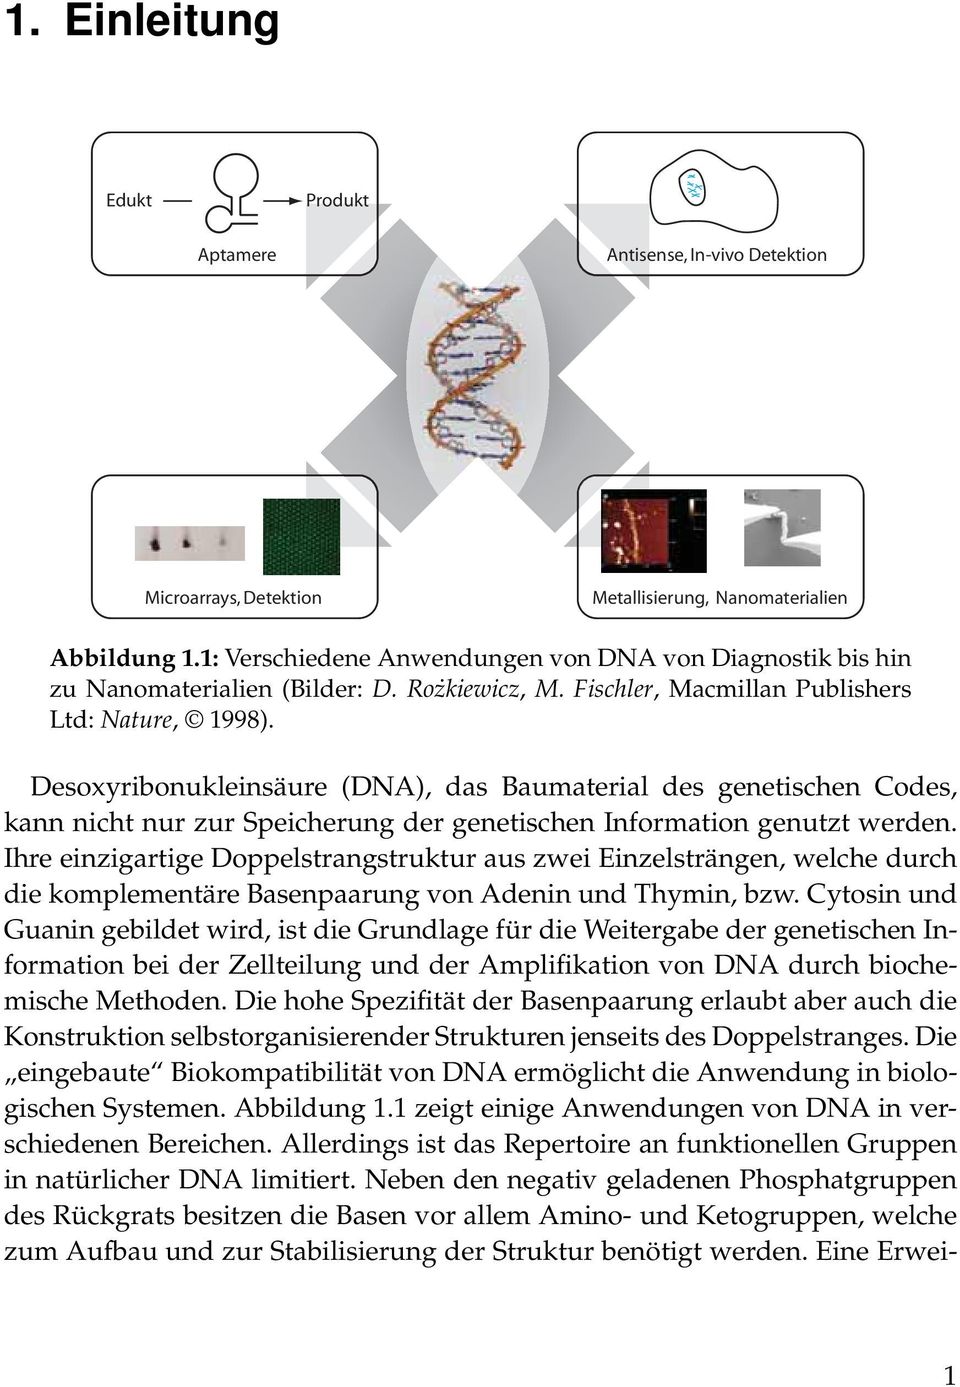 Desoxyribonukleinsäure (DA), das Baumaterial des genetischen Codes, kann nicht nur zur Speicherung der genetischen Information genutzt werden.